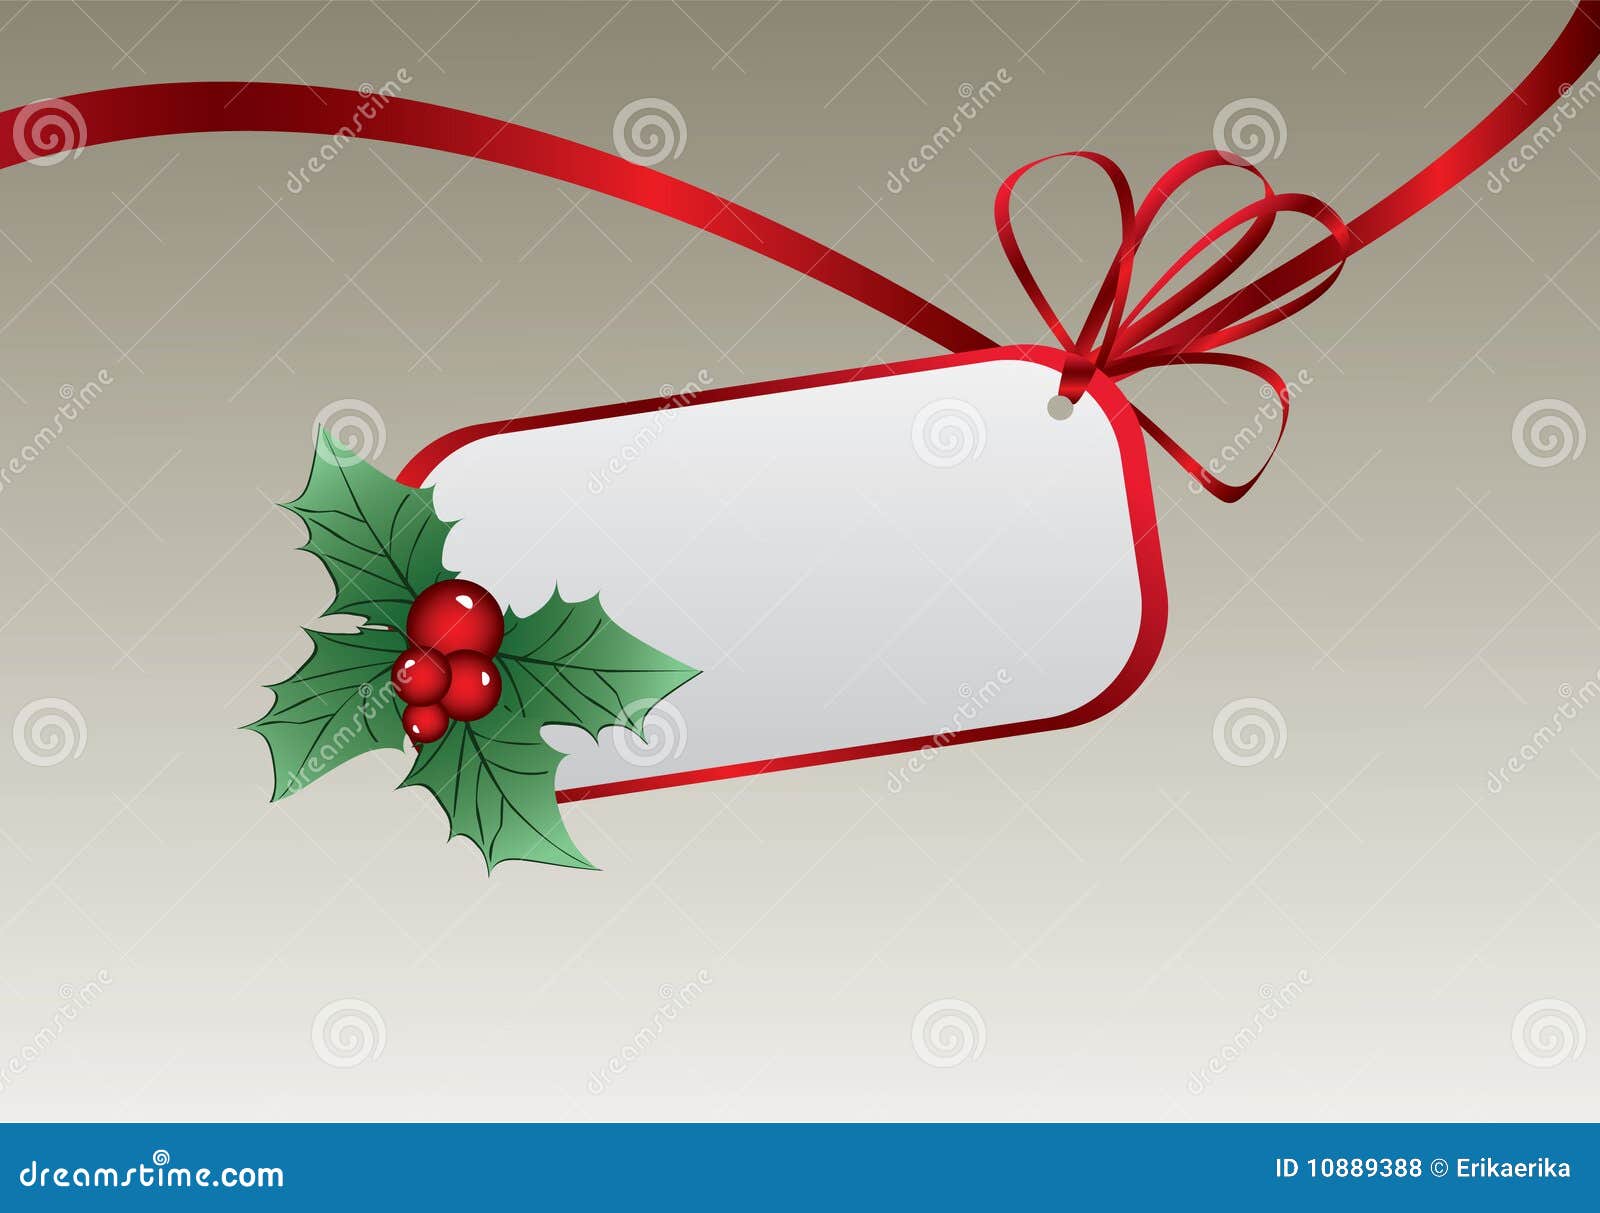 Modifica Foto Di Natale.Modifica Di Natale Illustrazione Vettoriale Illustrazione Di Natale 10889388